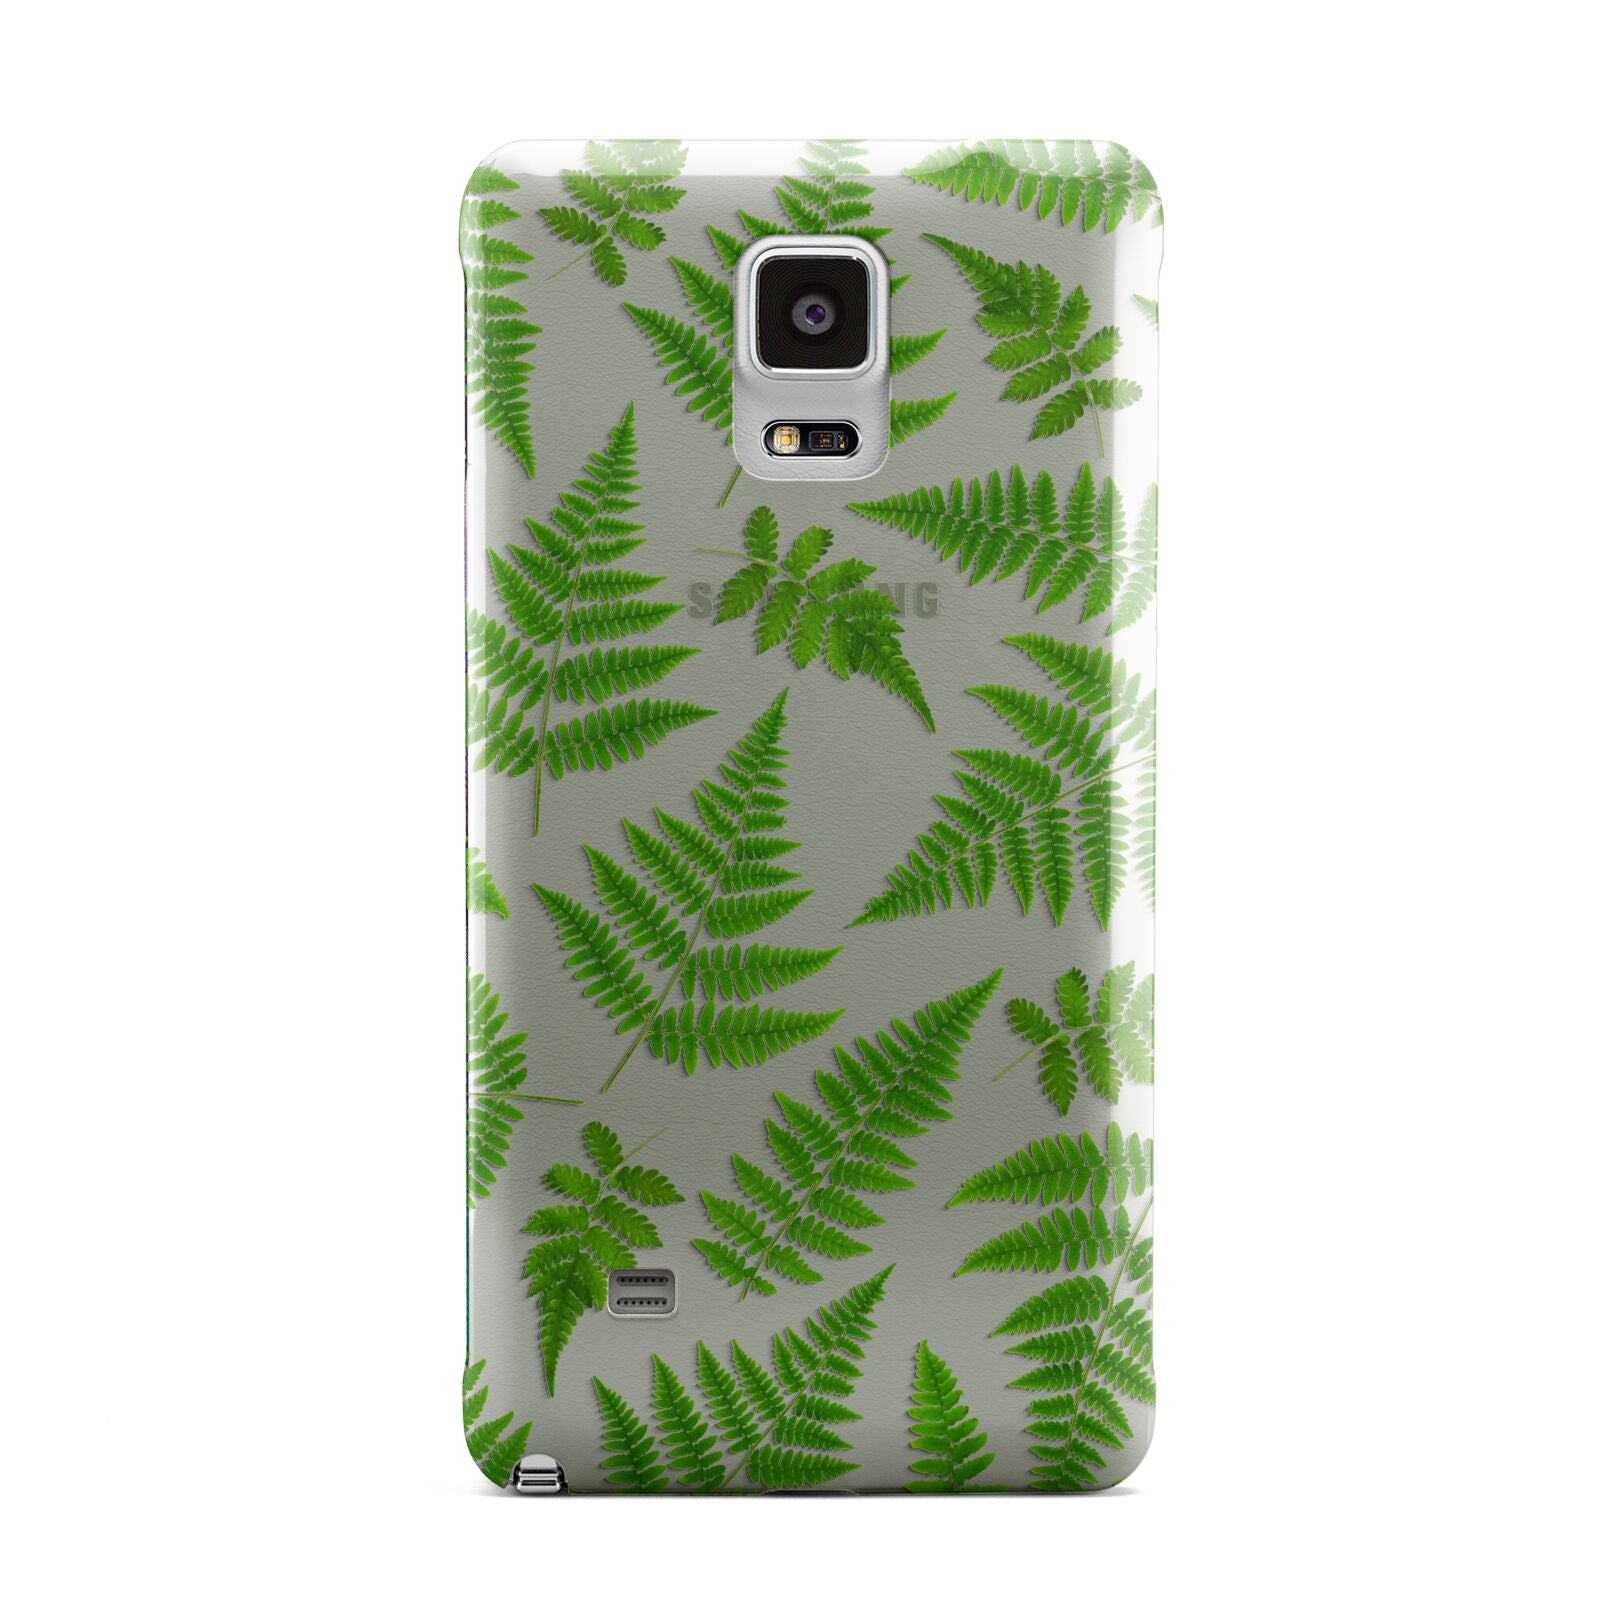 Fern Leaf Samsung Galaxy Note 4 Case